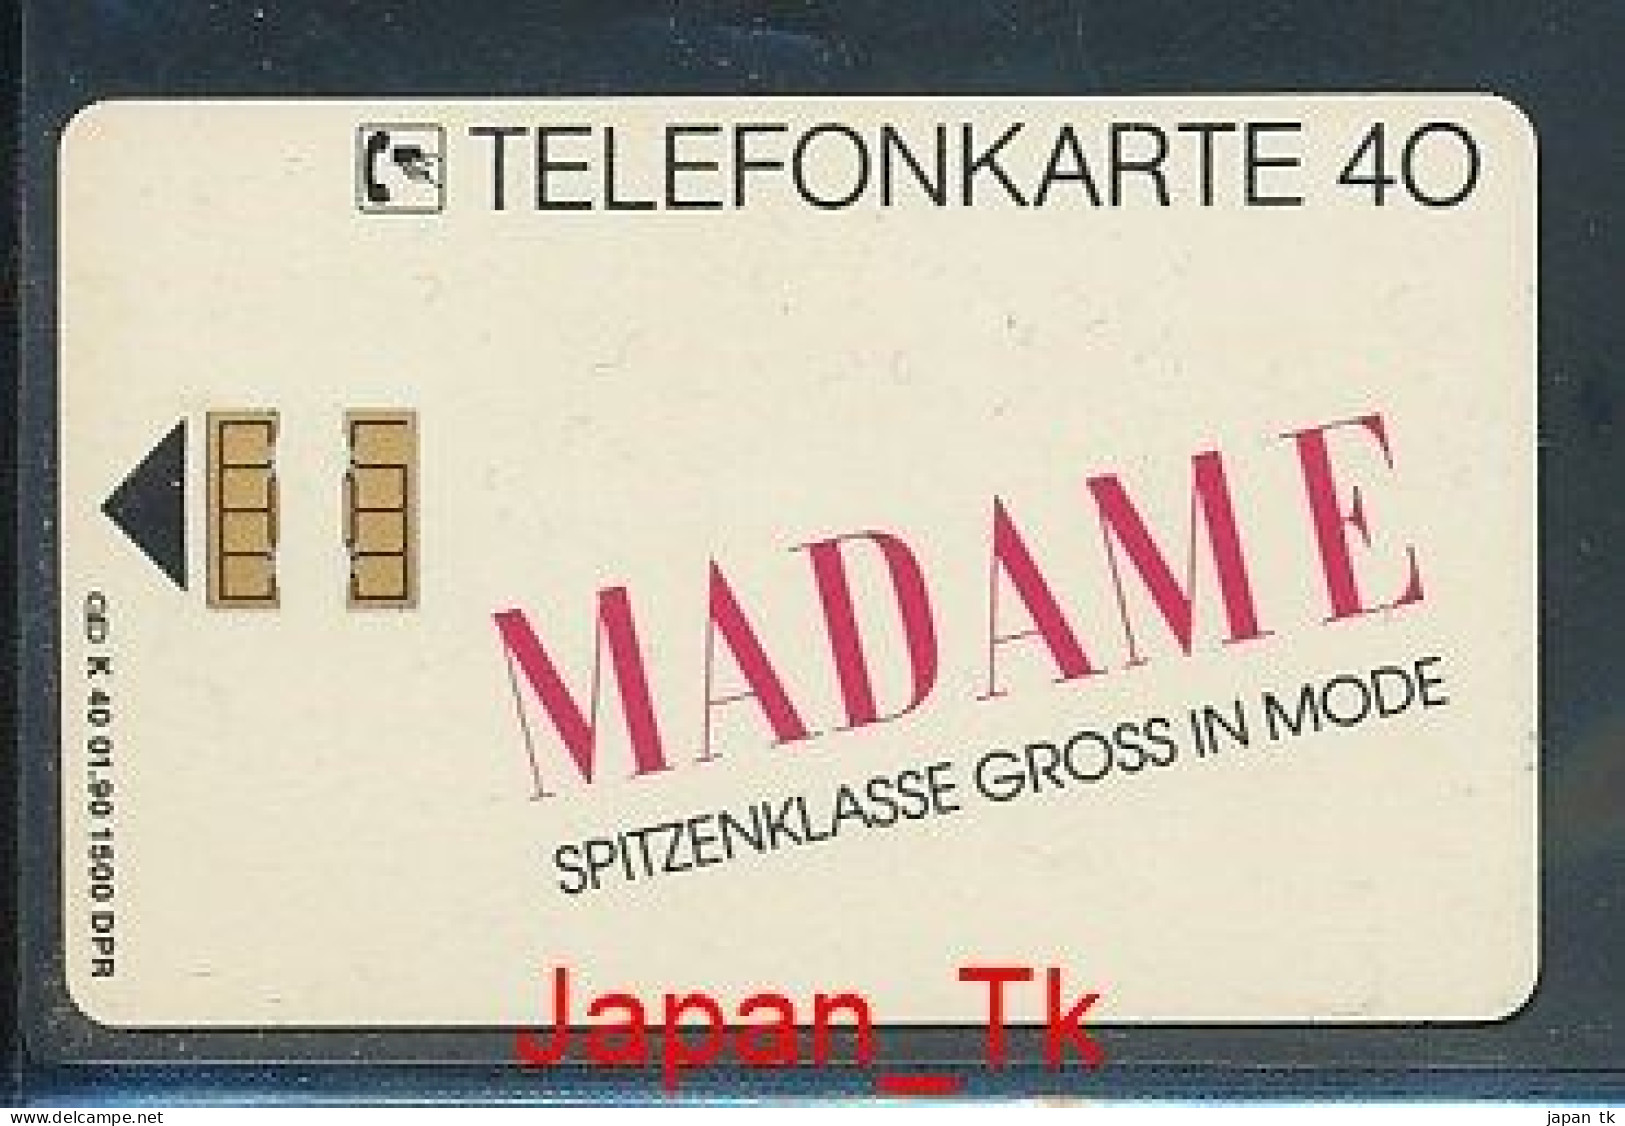 GERMANY K 40  90 Madame   - Aufl  1 500 - Siehe Scan - K-Series: Kundenserie